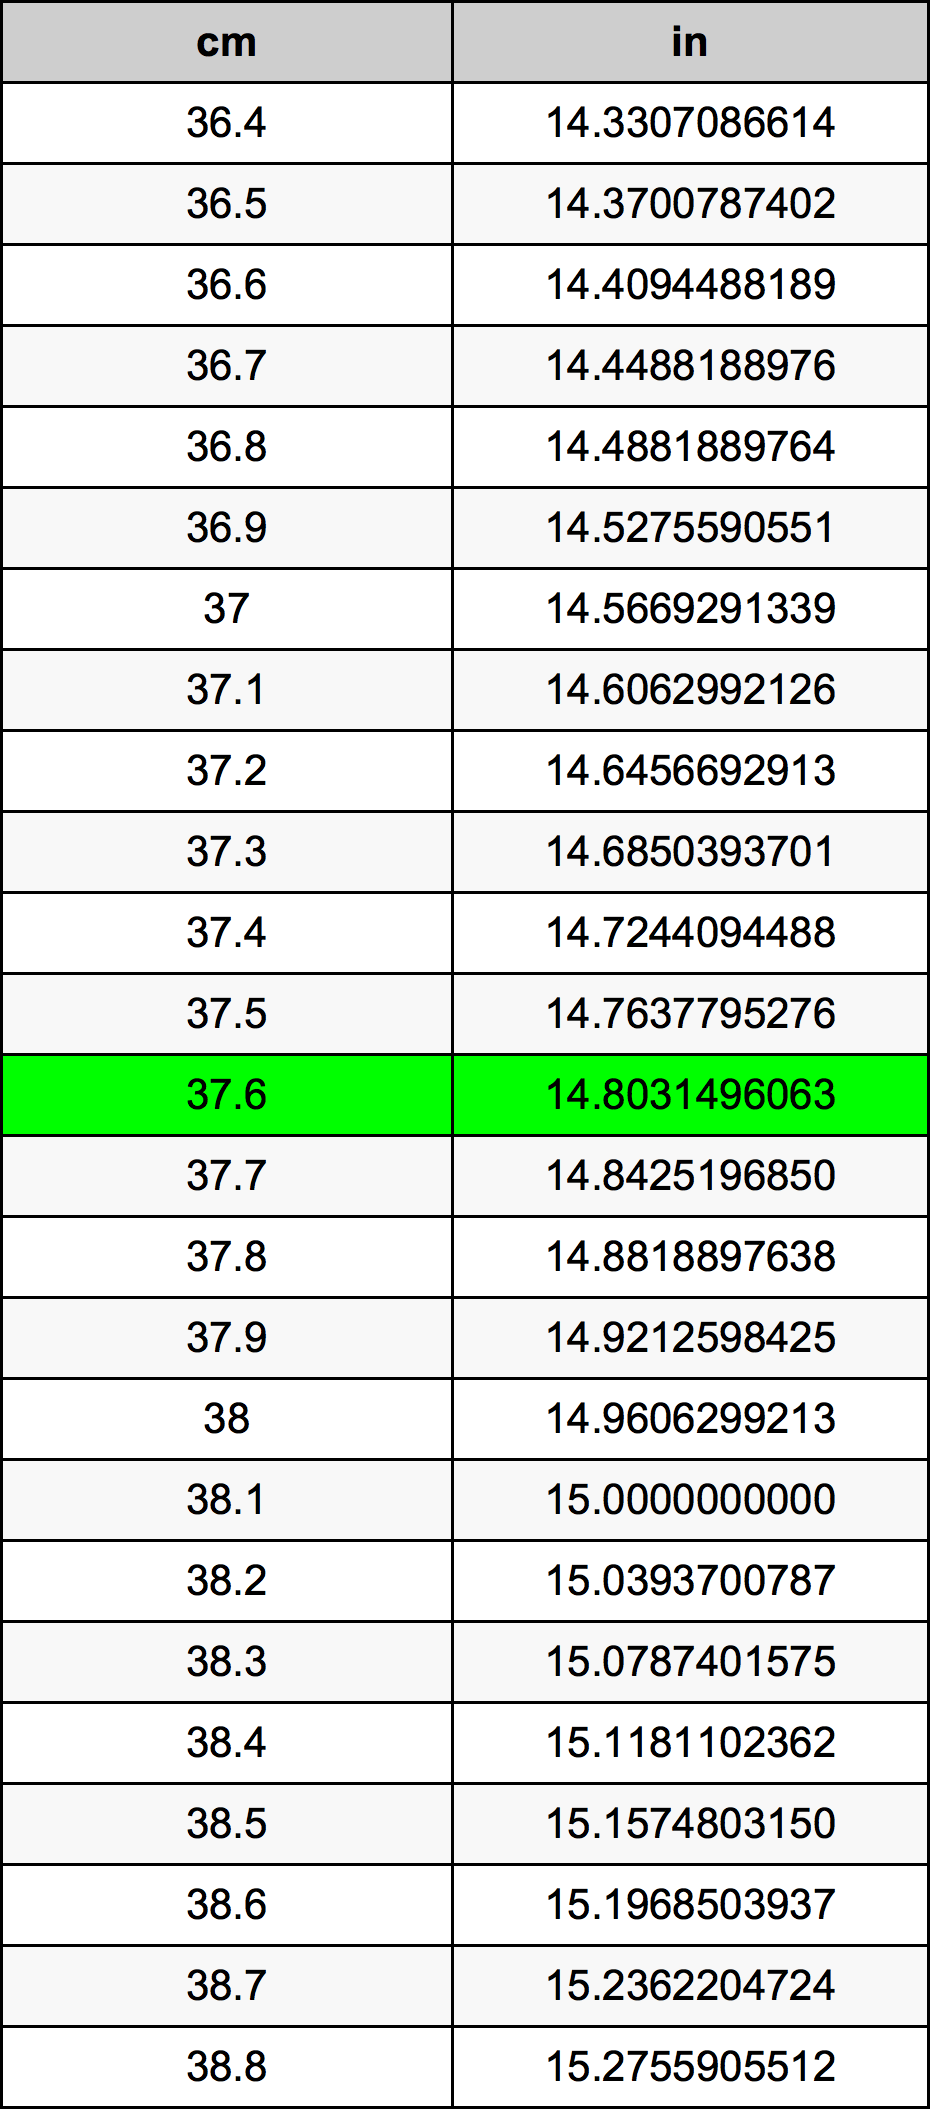 37.6 Centiméter átszámítási táblázat